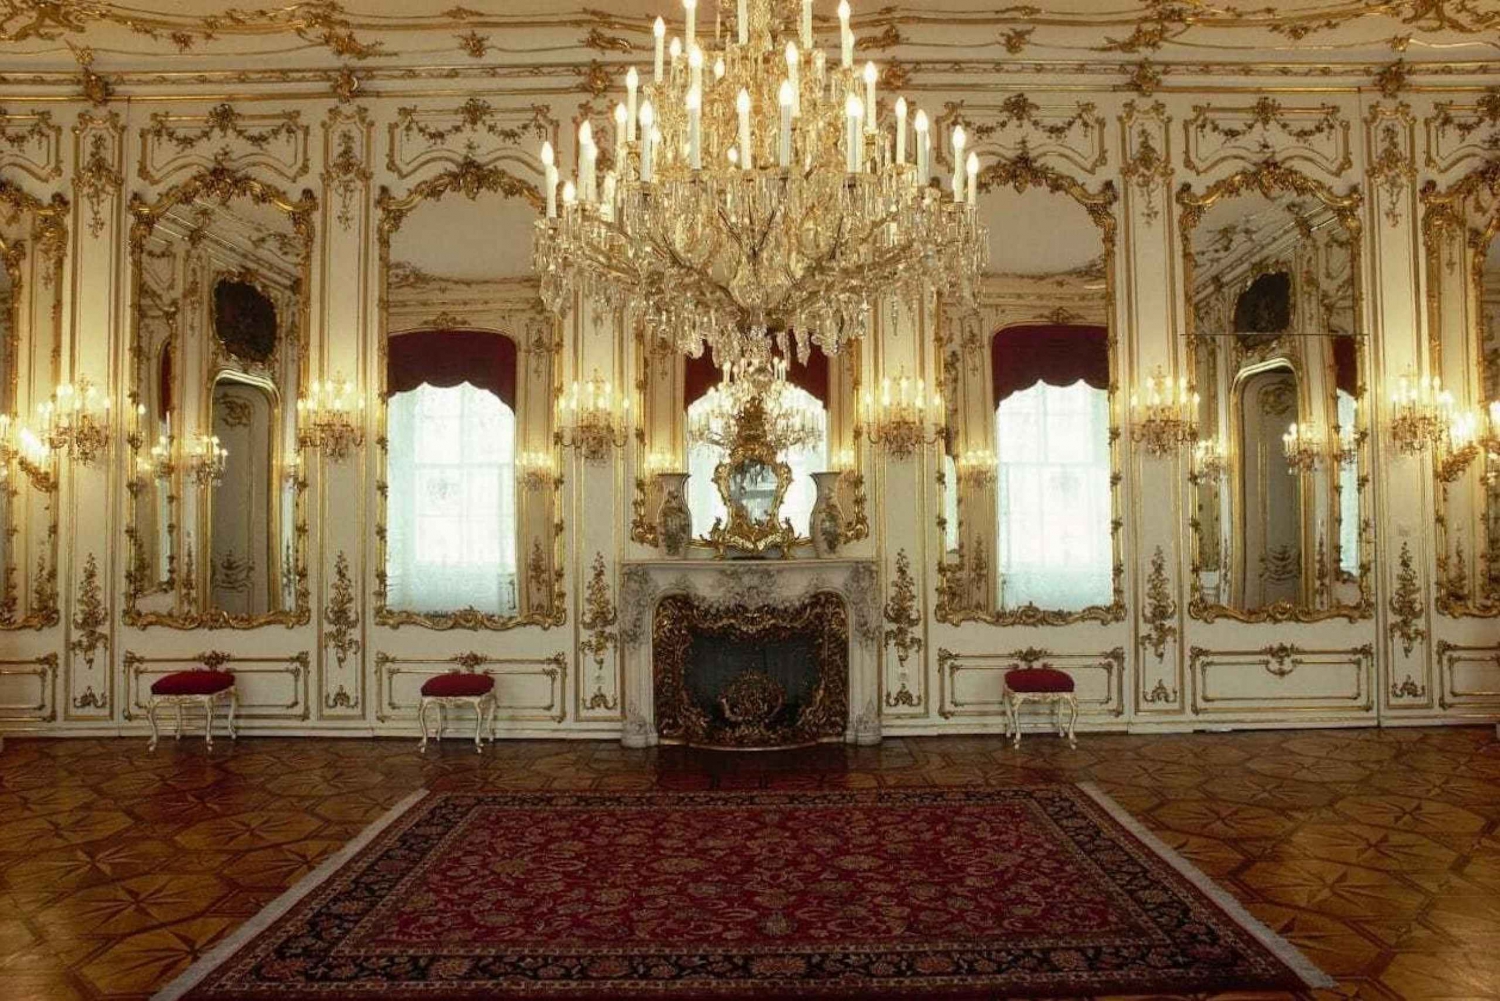 Wien: Hofburg och kejsarinnan Sisis museum guidad tur